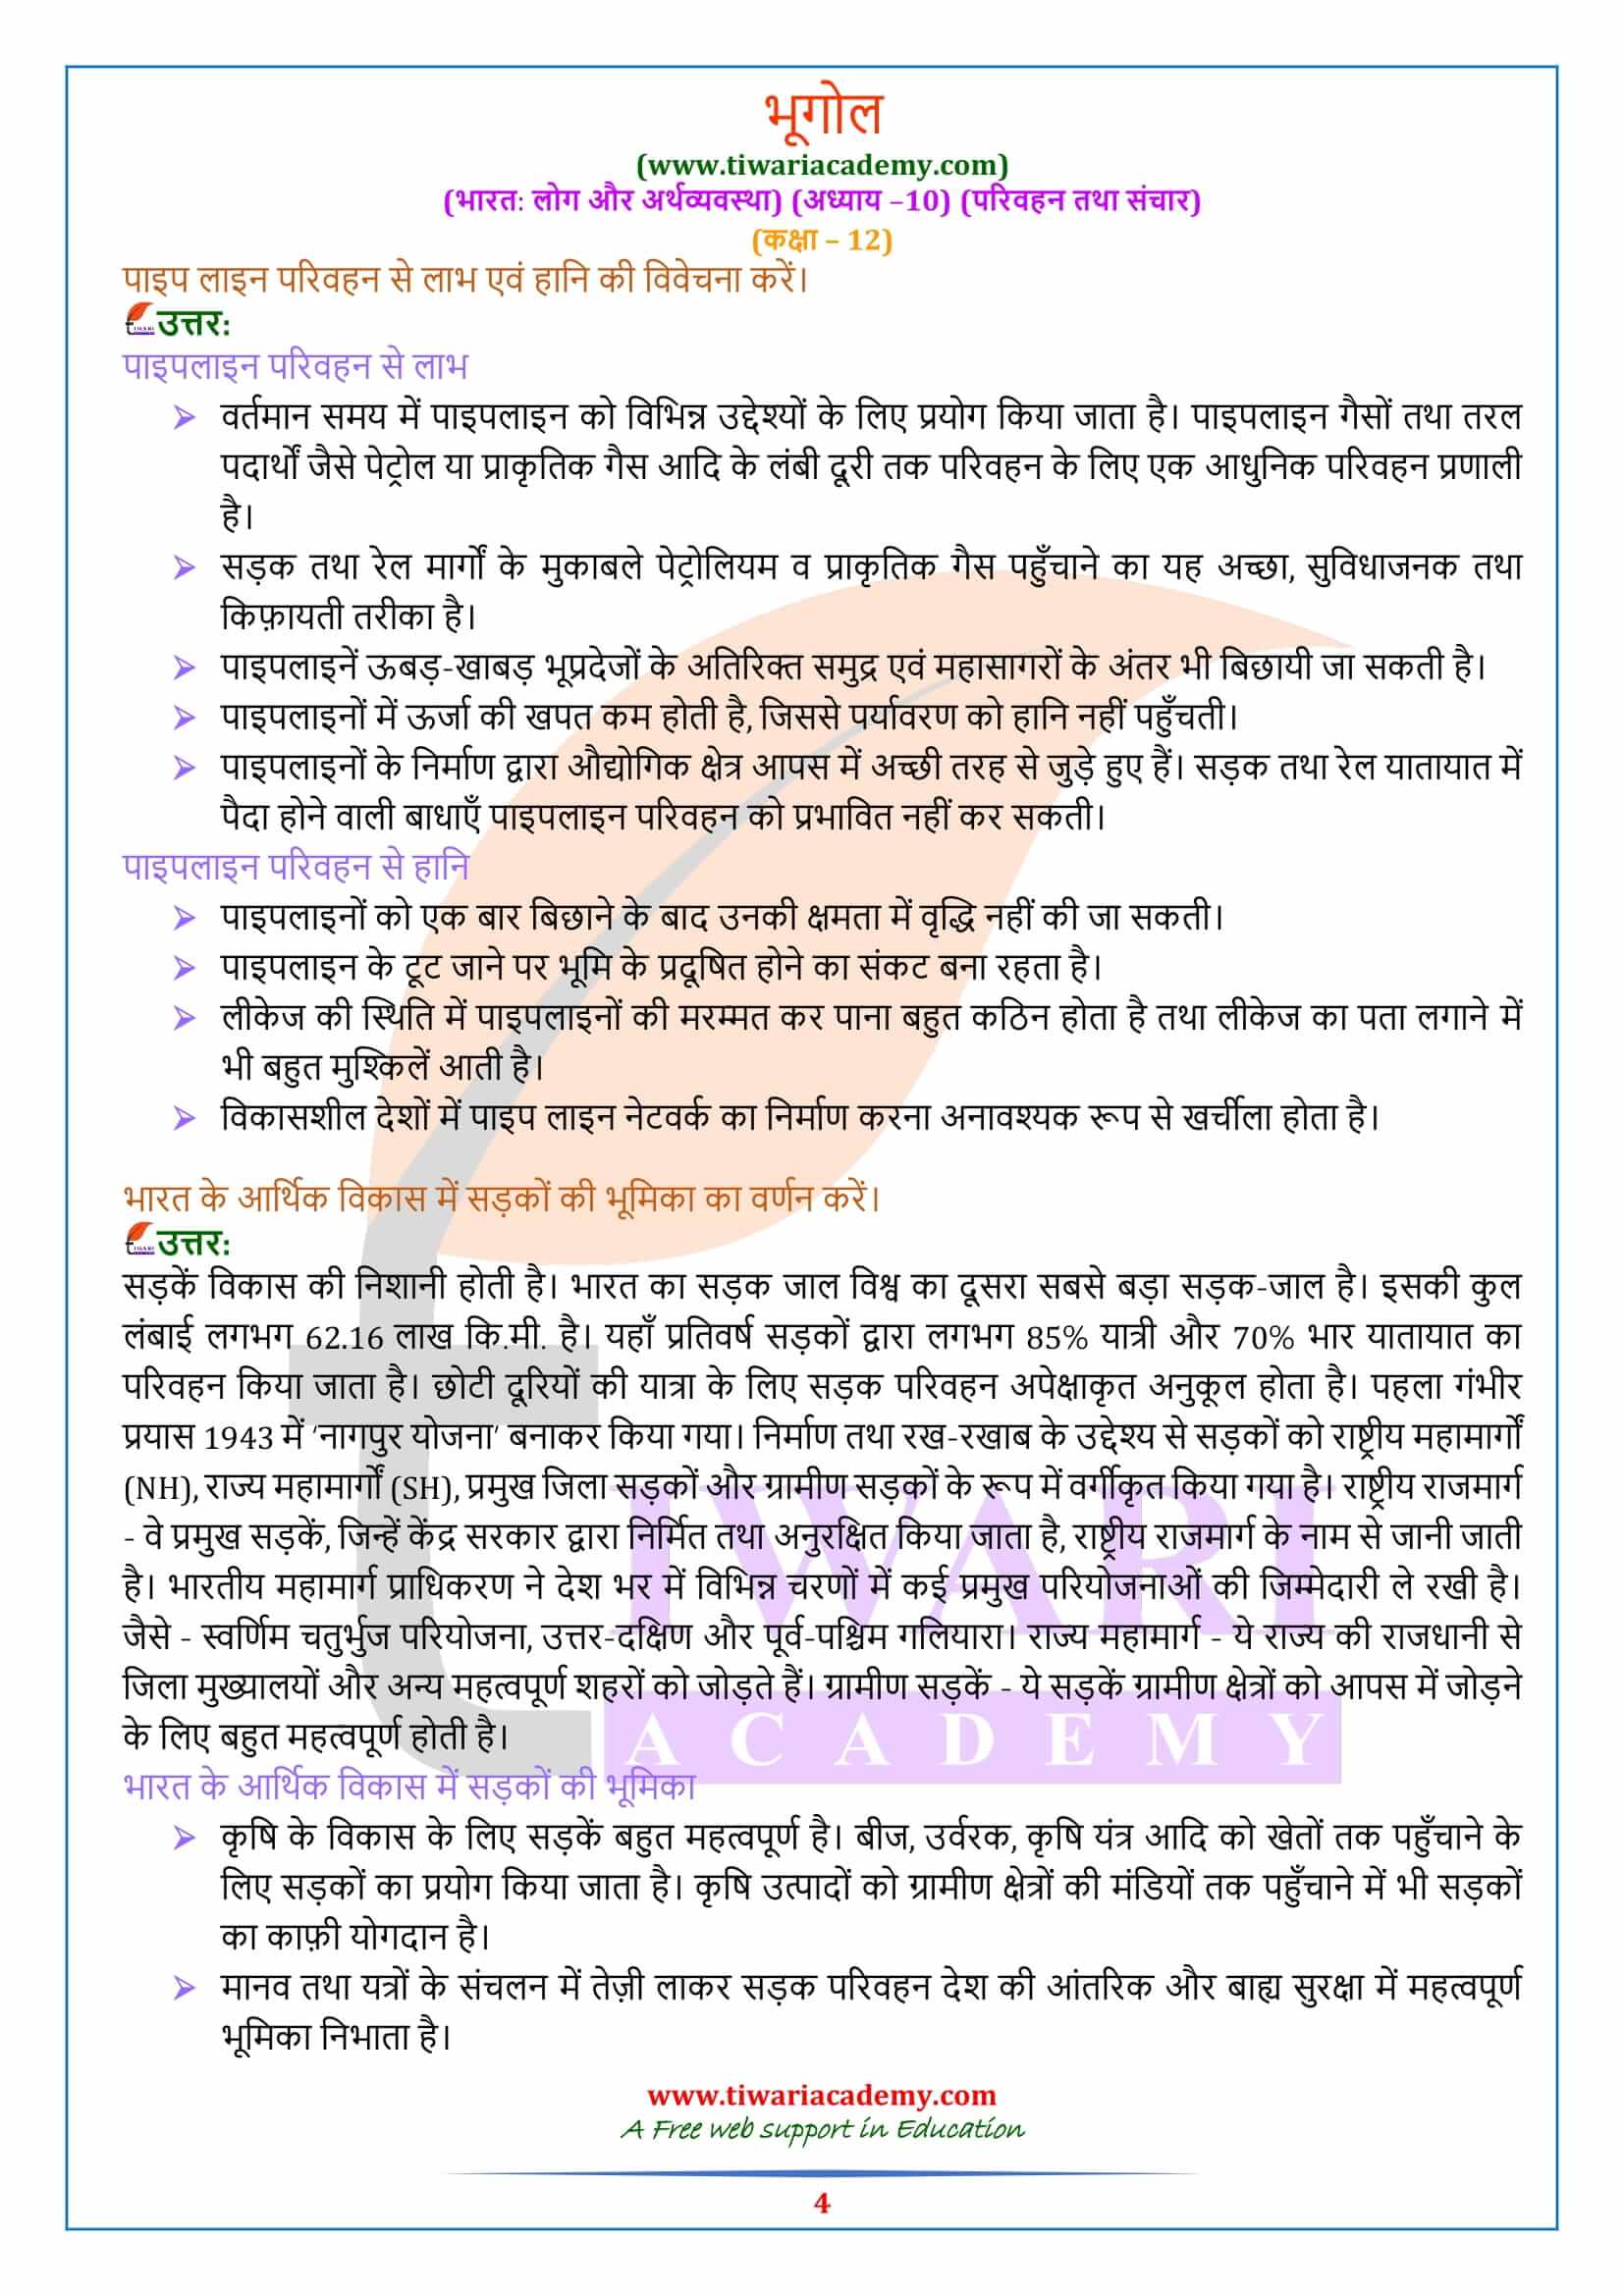 एनसीईआरटी समाधान कक्षा 12 भूगोल अध्याय 10 हिंदी मीडियम में